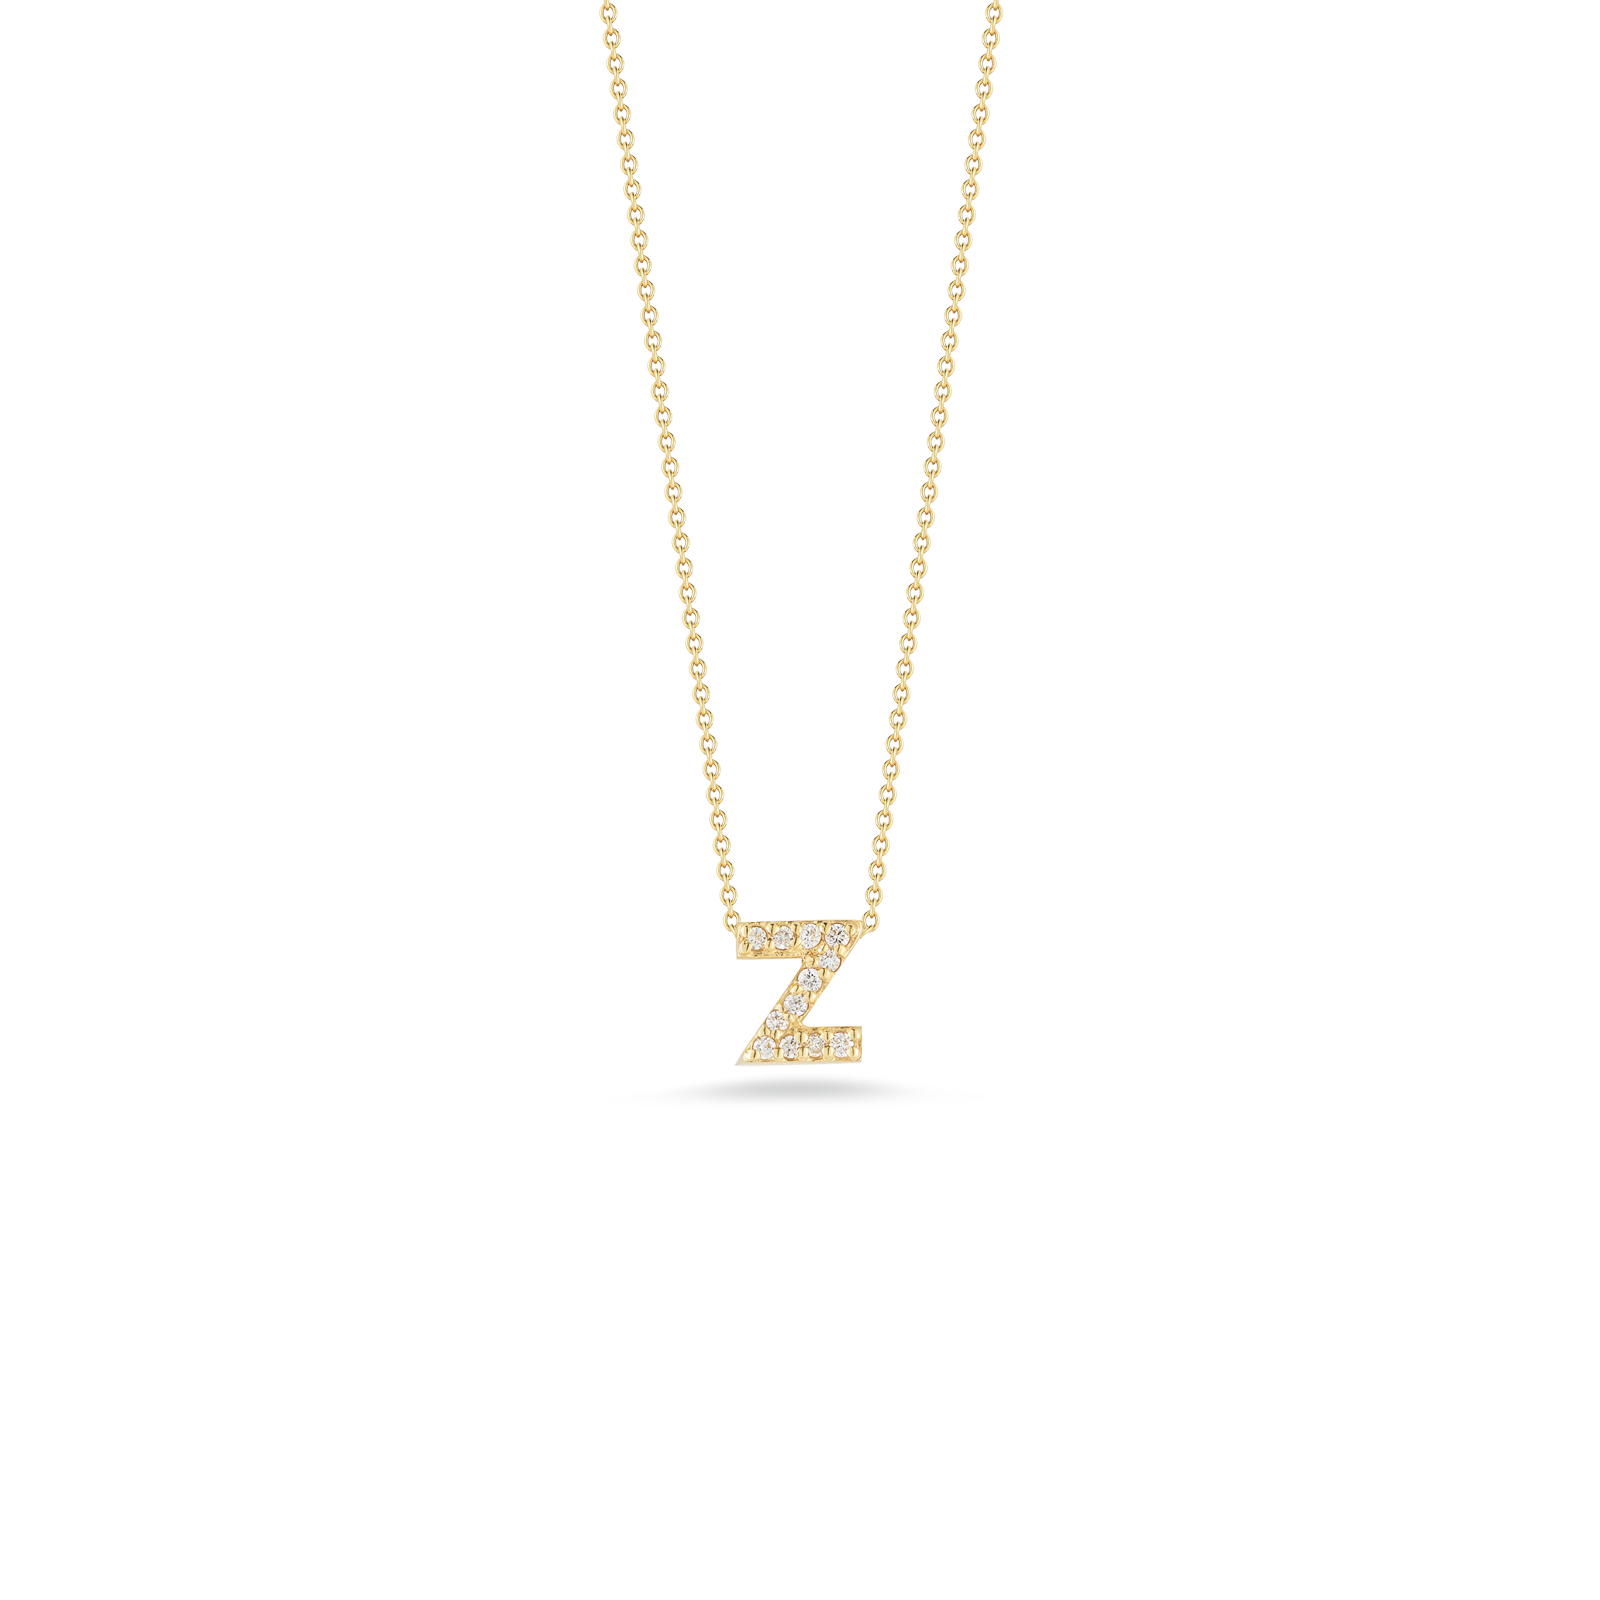 Roberto Coin 18K Diamond Love Letter Necklace "Z"